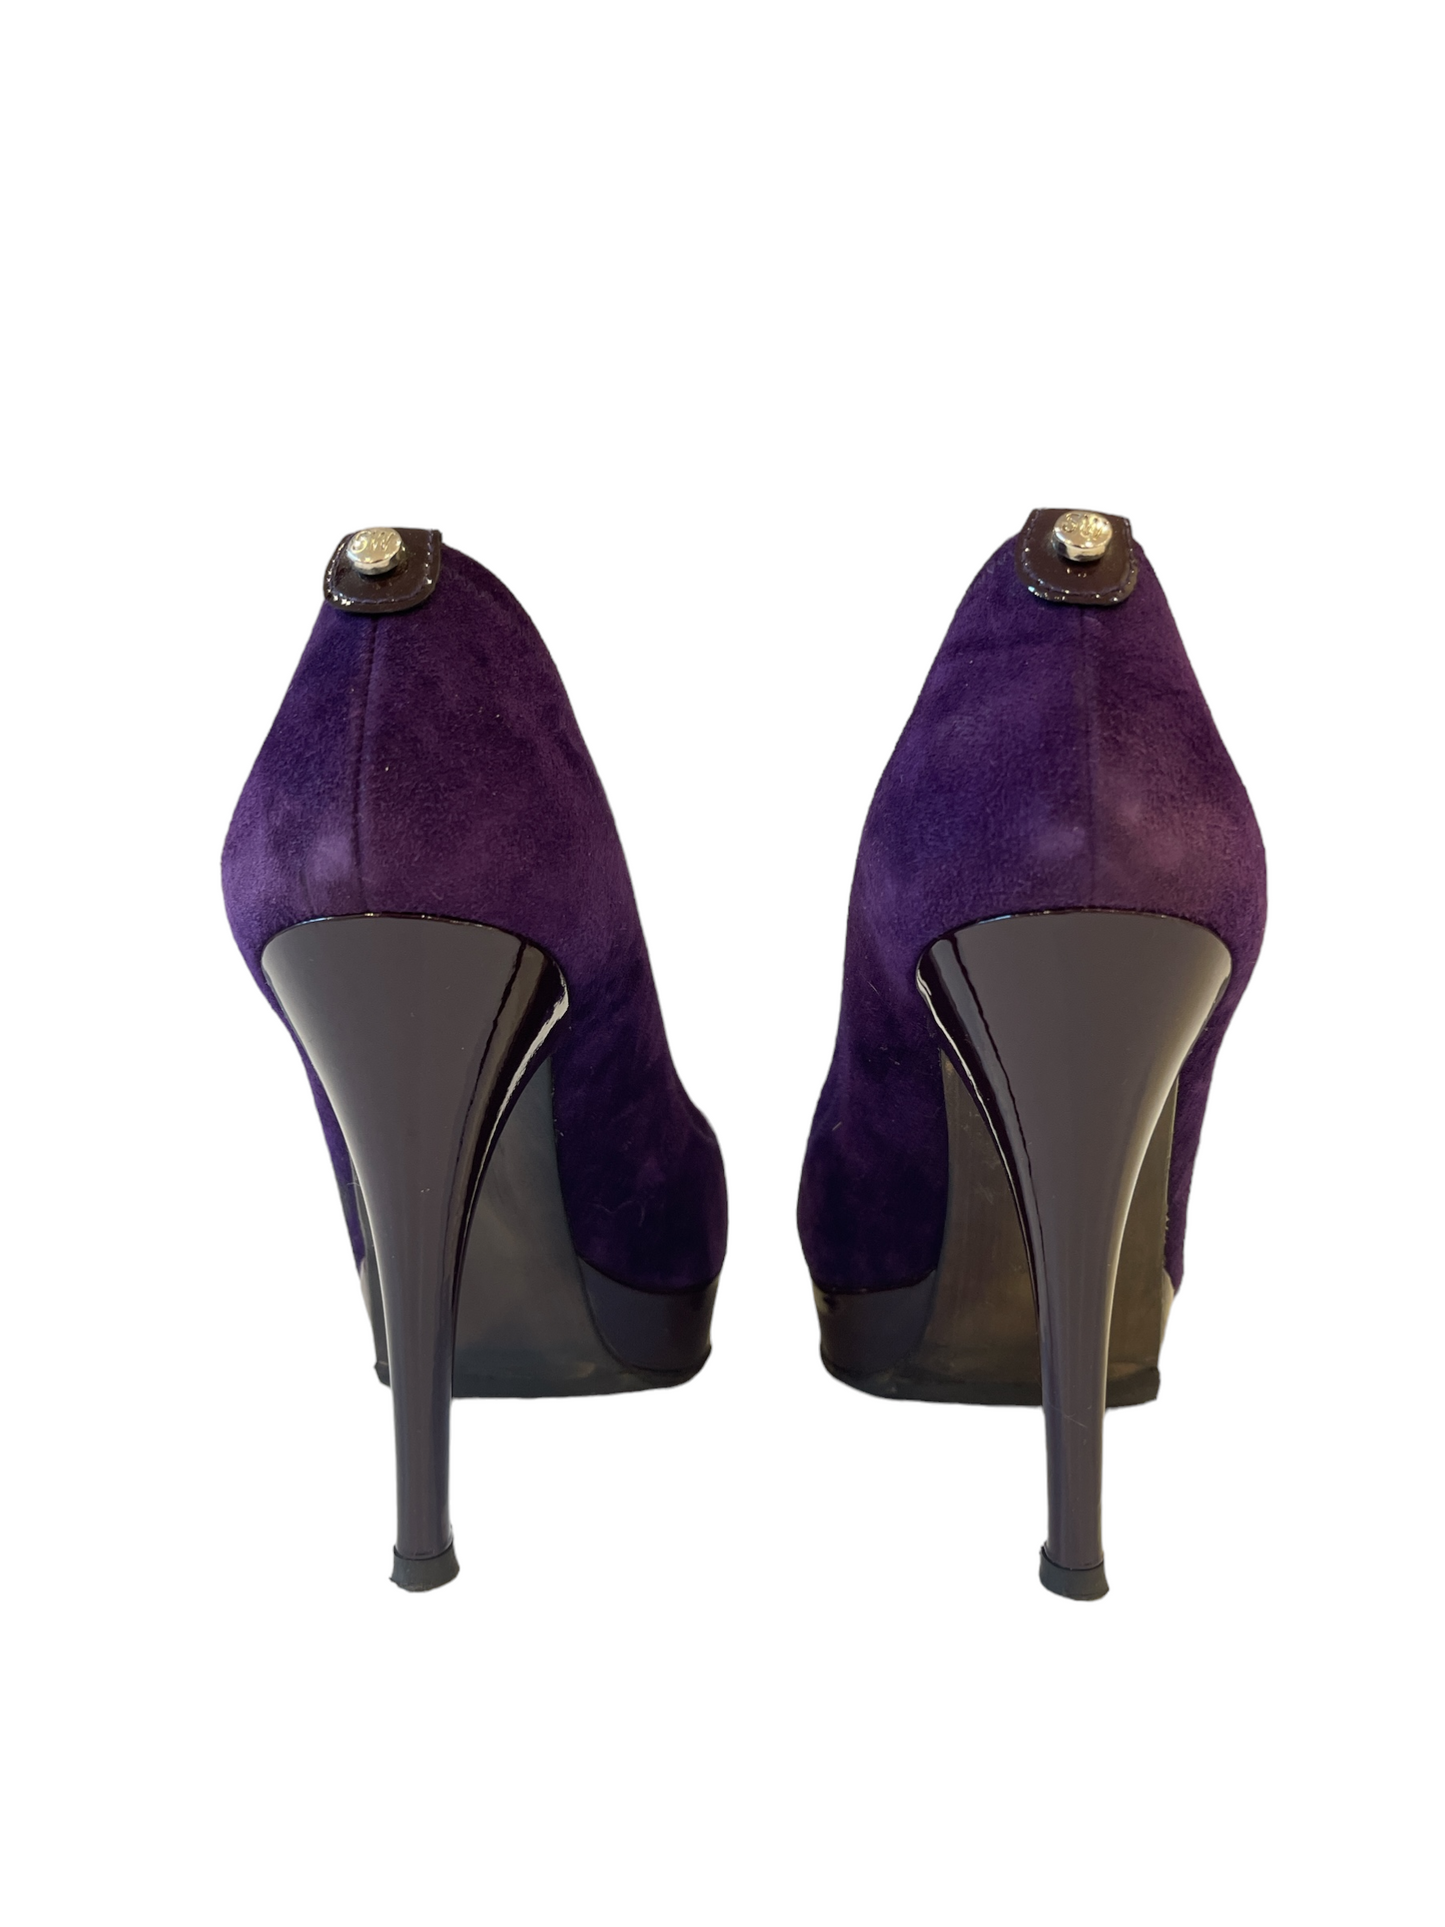 Stuart Weitzman Purple Suede Peek-a-Boo Toe High Heels Size 8.5